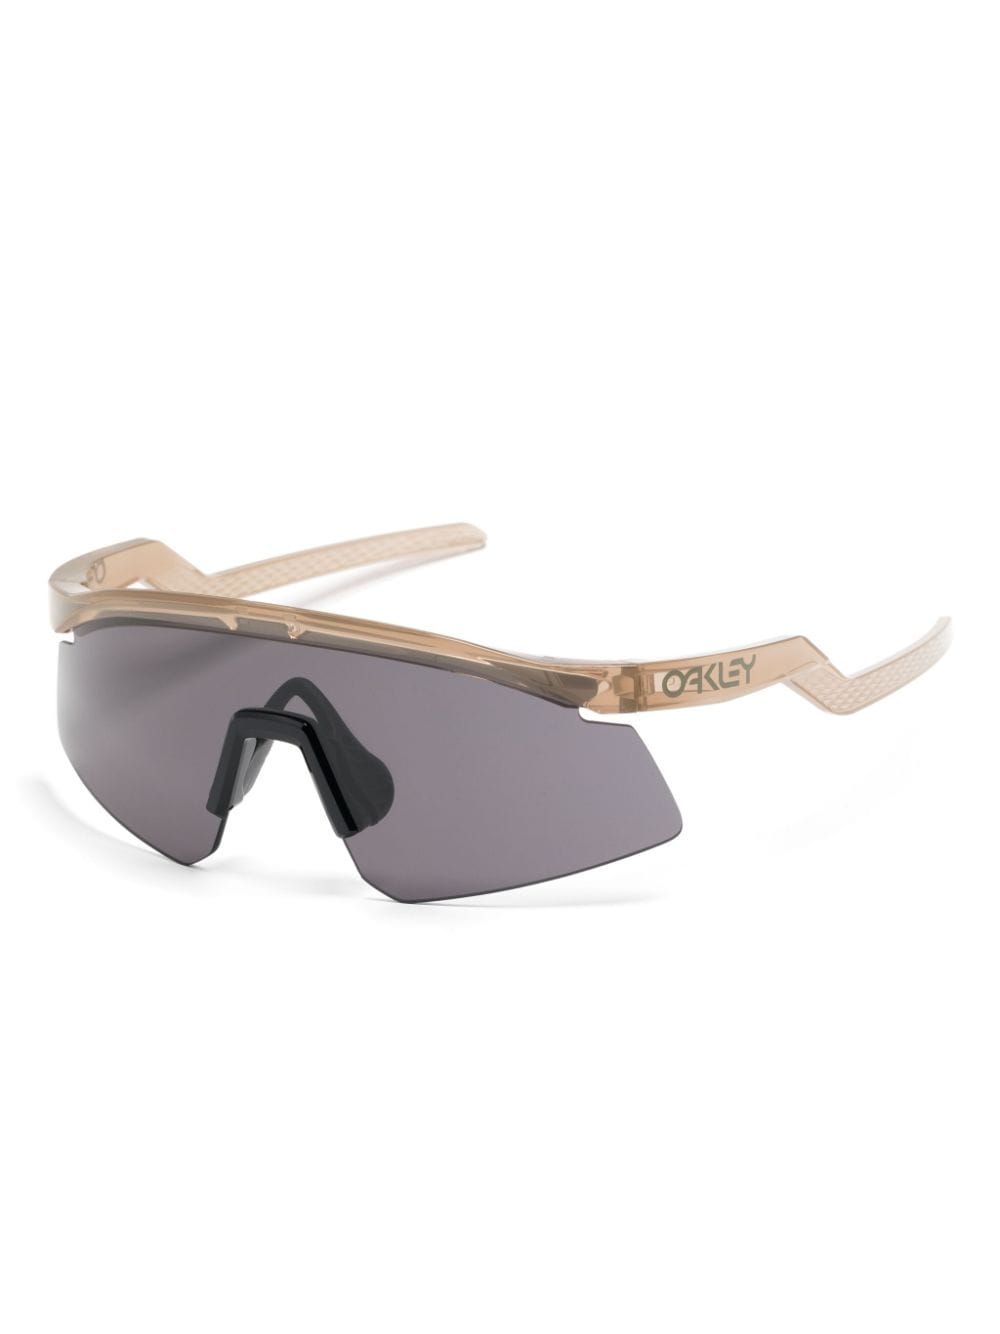 Oakley Hydra shield-frame sunglasses Beige